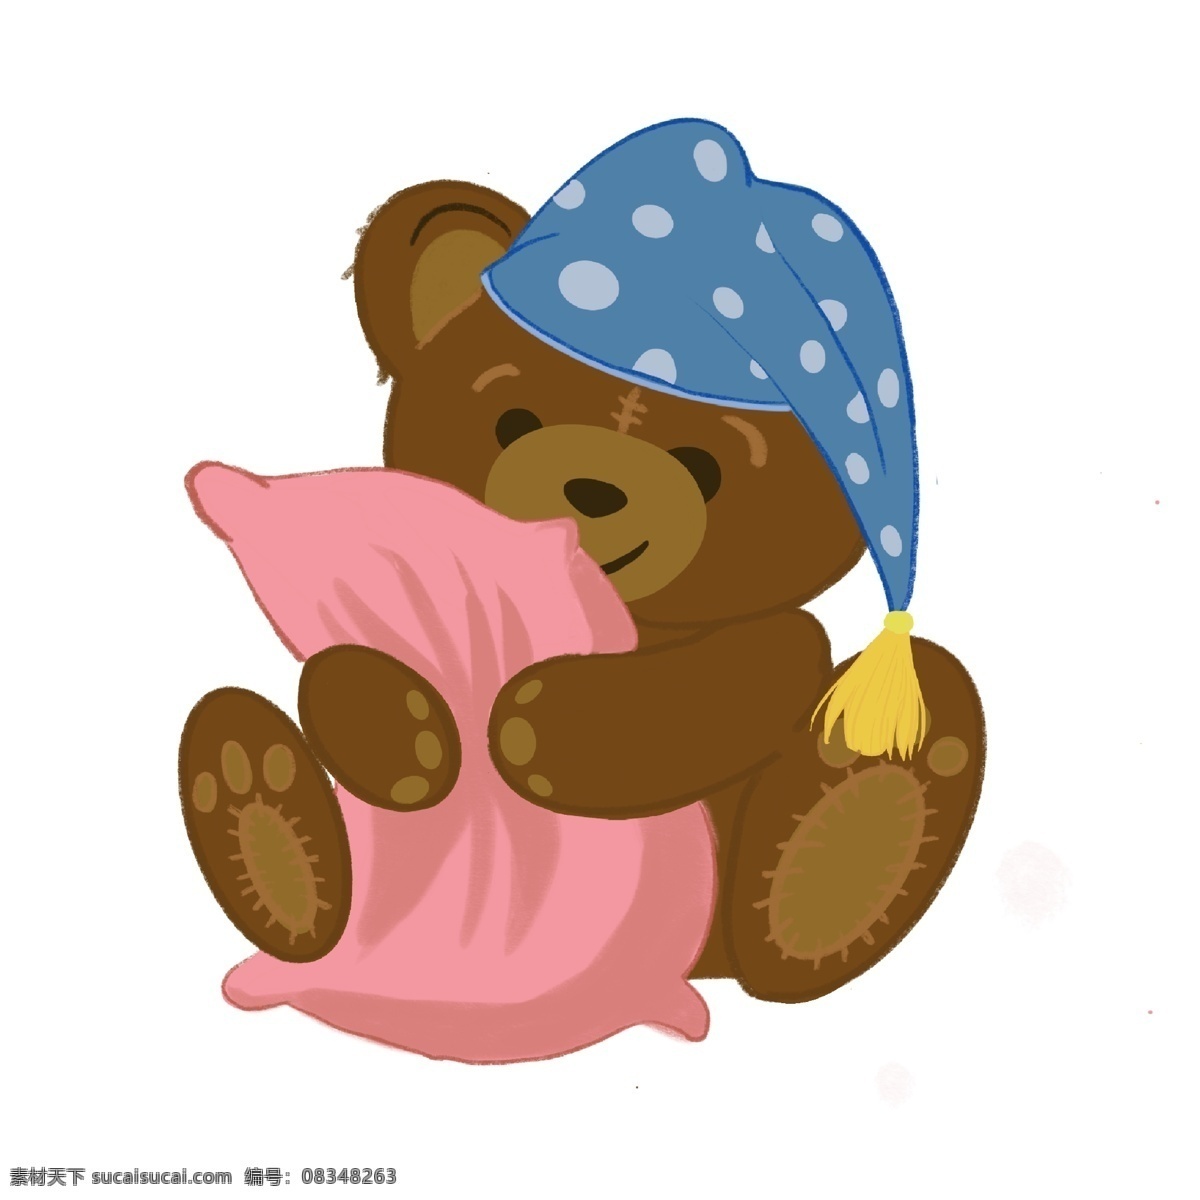 儿童节 熊 娃娃 毛绒玩具 毛绒 熊娃娃 可爱 抱枕 睡帽 卡通